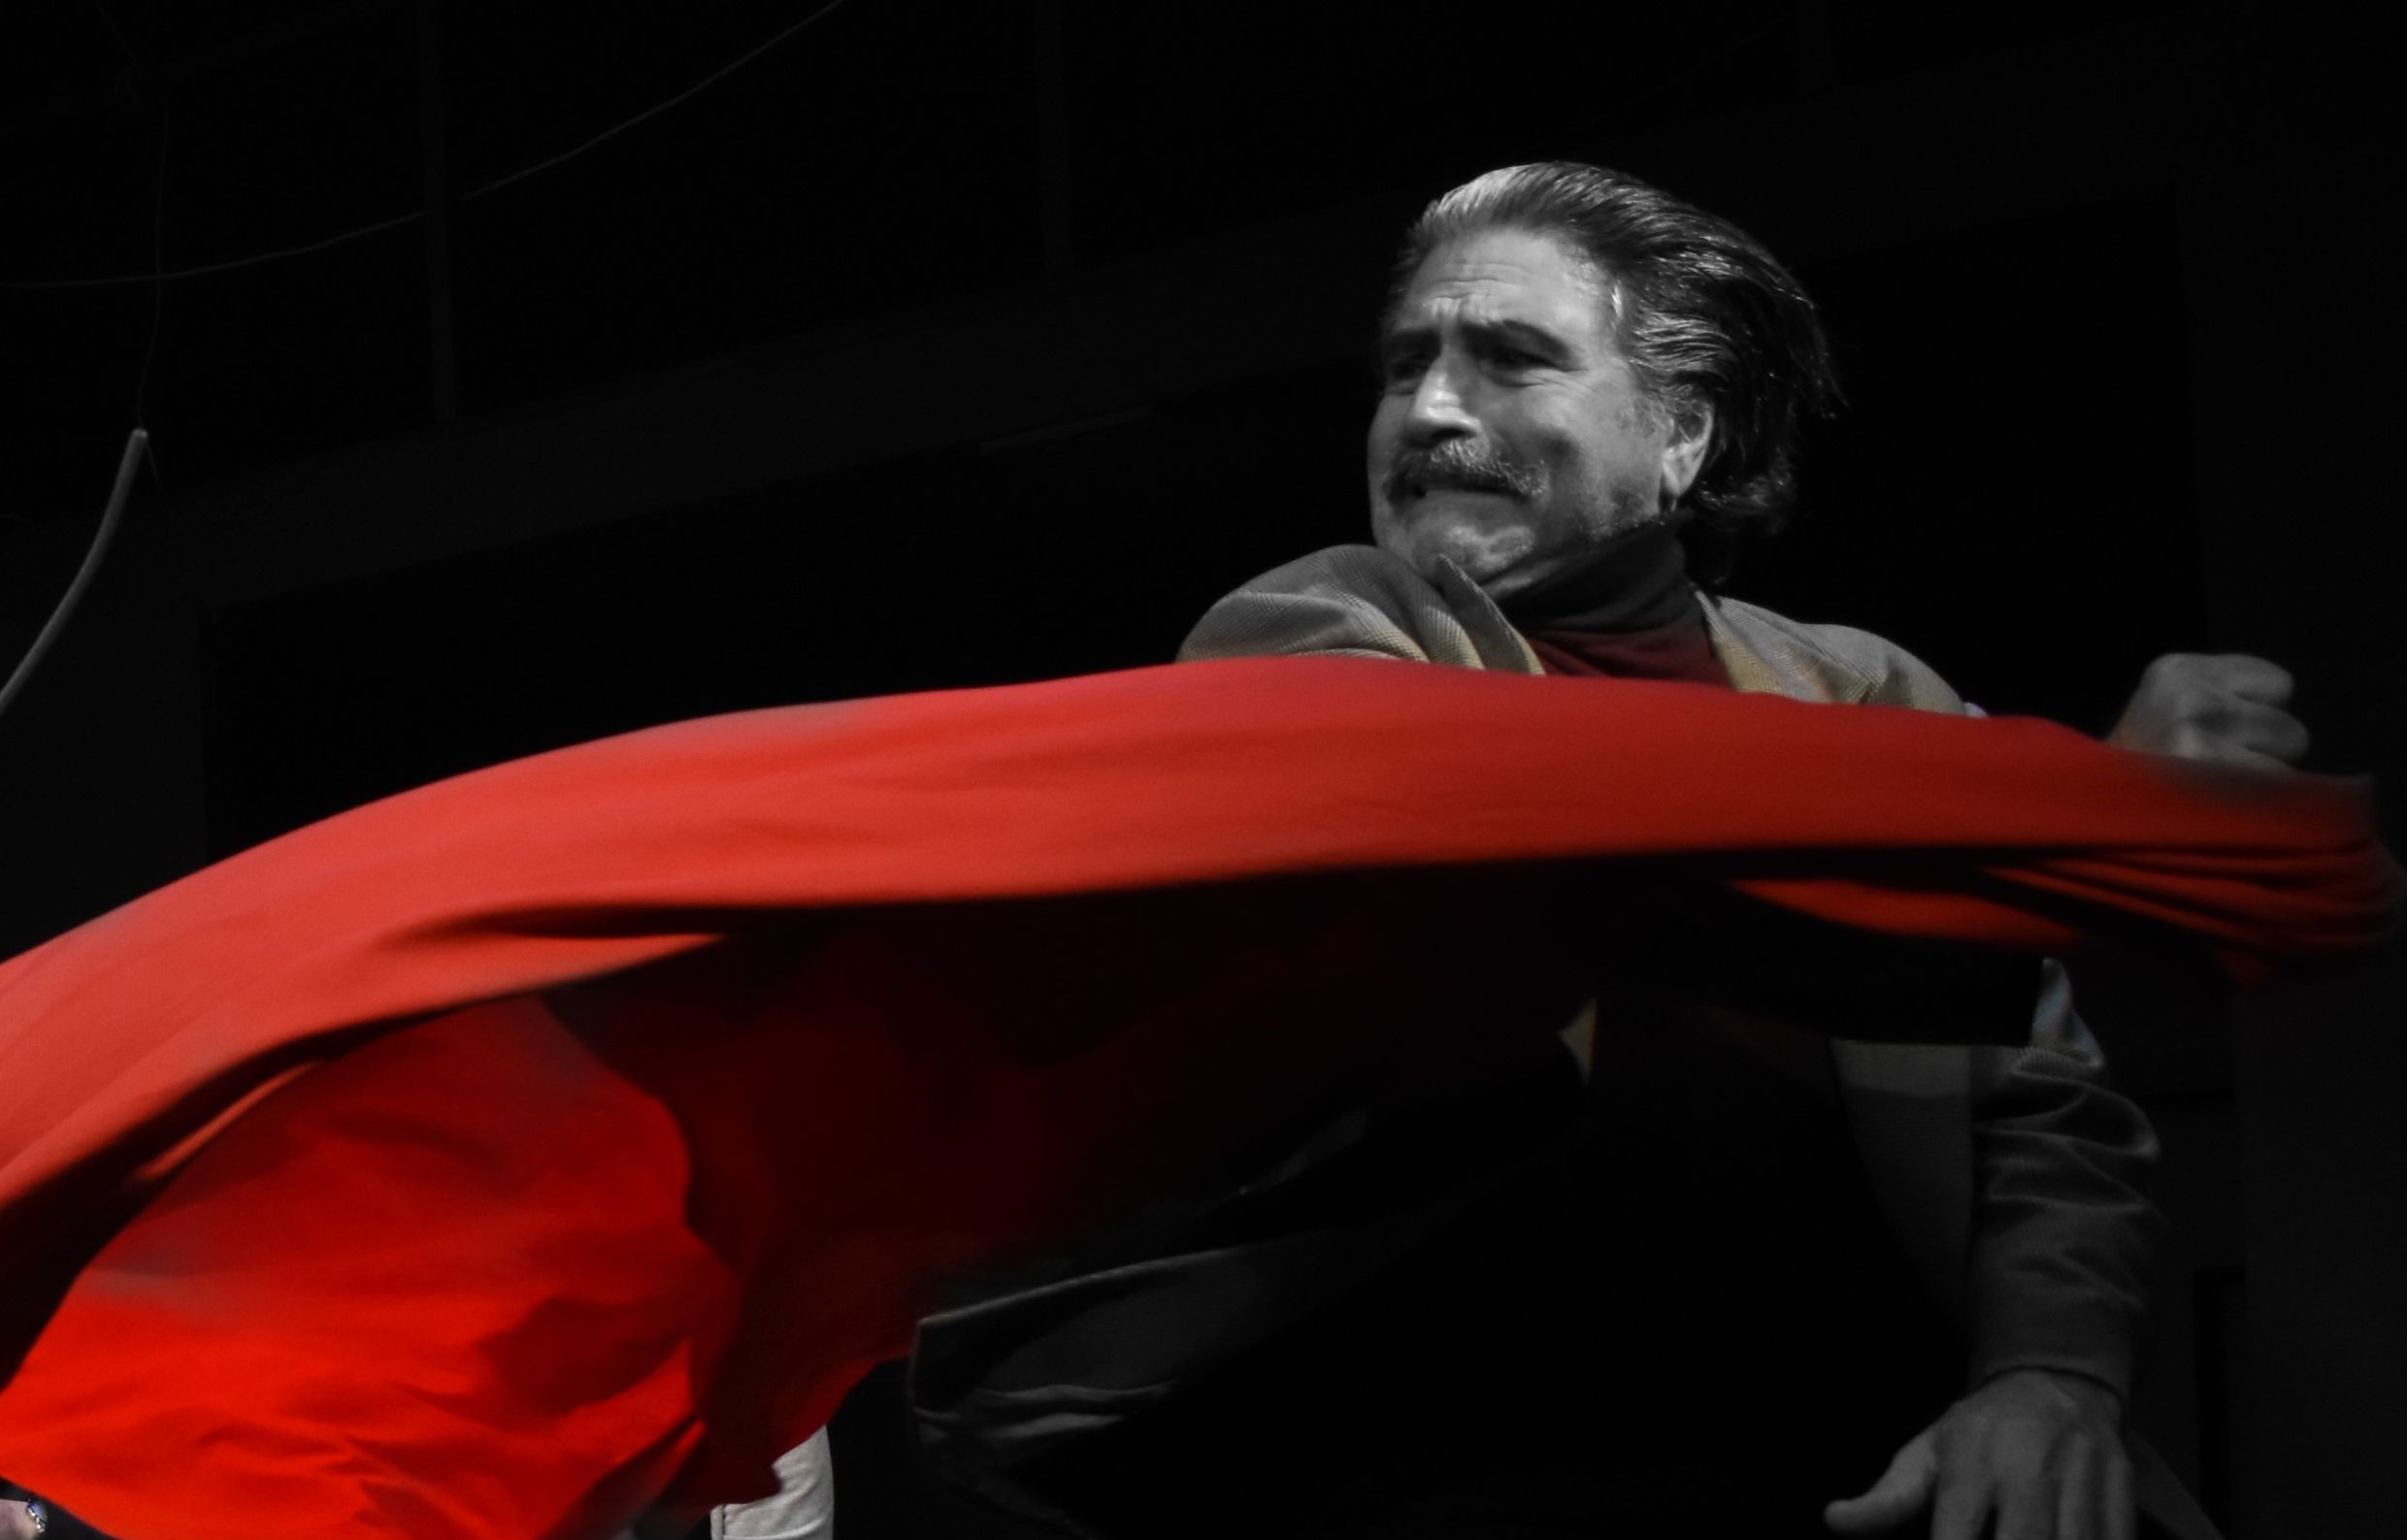 Κριτική | «Ο φονιάς» του Μήτσου Ευθυμιάδη στο Θέατρο Έαρ-Βικτώρια: οι αντέχοντες θύματα και θύτες